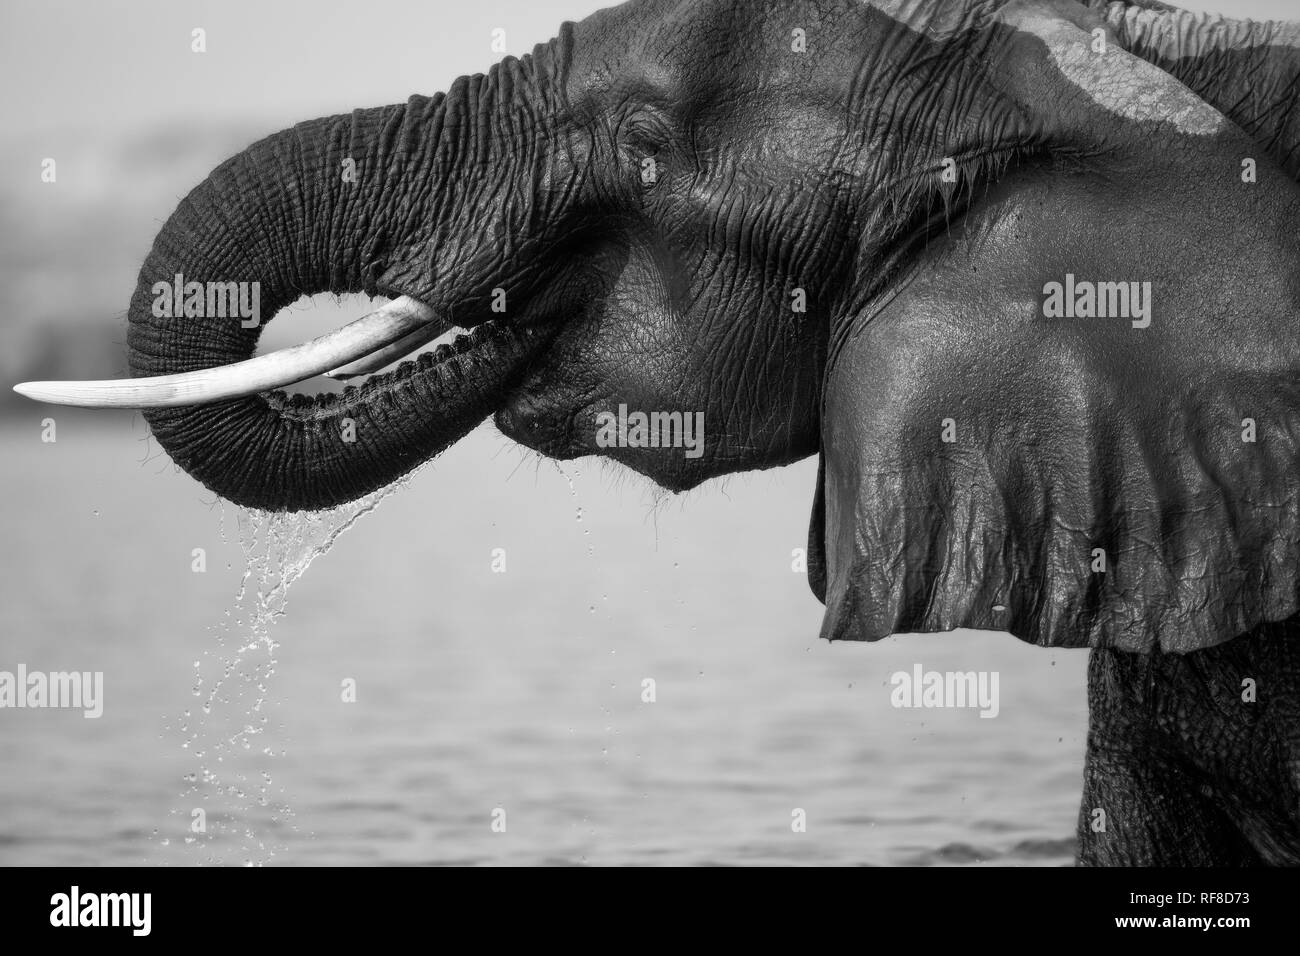 Un elefante, Loxodonta africana, la pelle bagnata, bevande acqua, trunk di bocca di gocciolamento di acqua, profilo laterale, in bianco e nero. Foto Stock